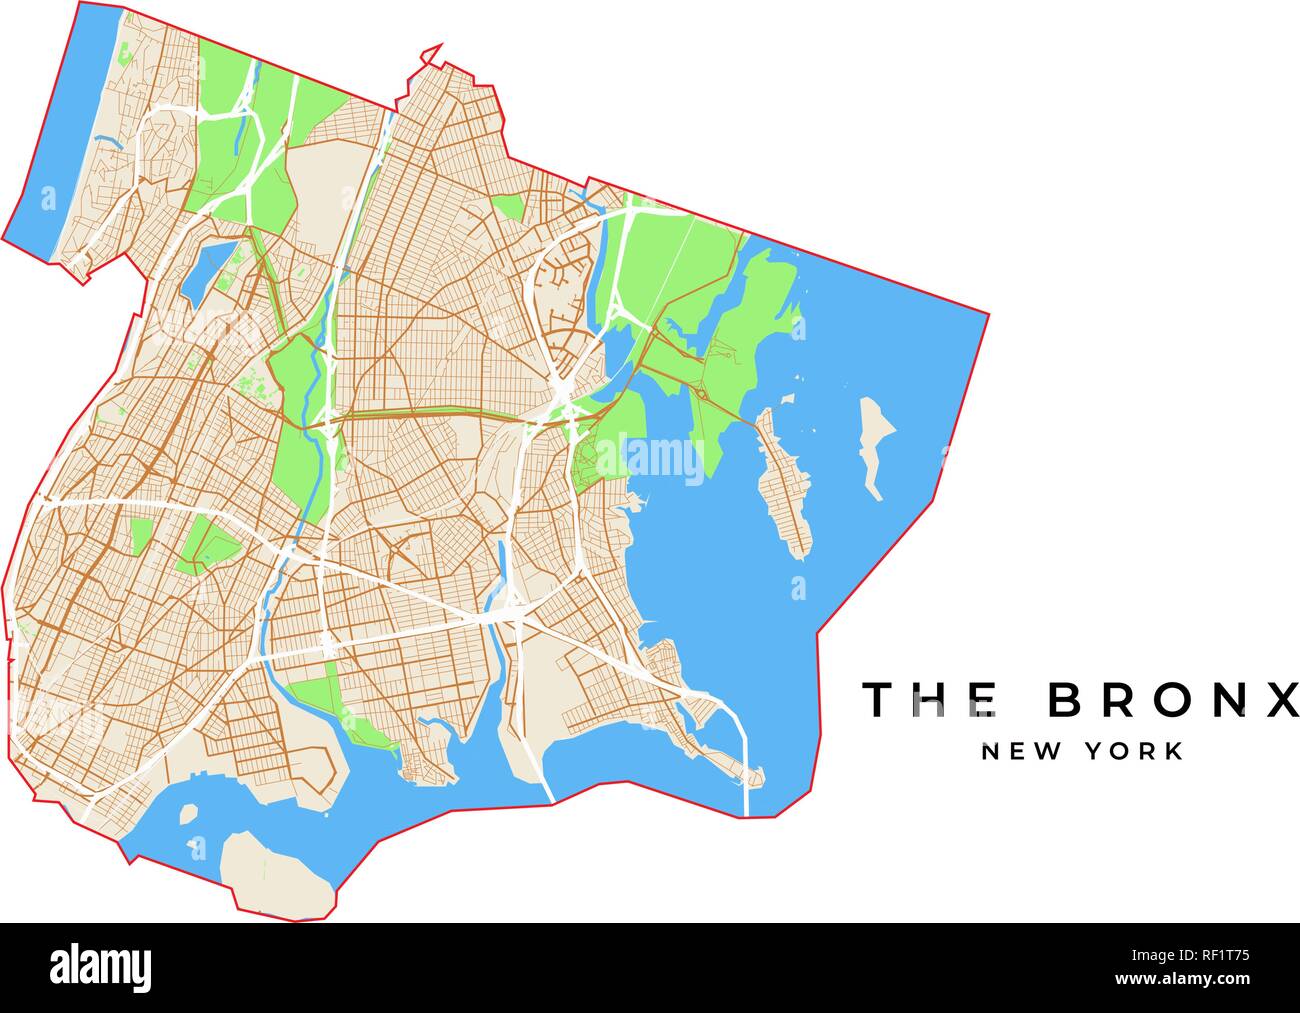 Vektorkarte der Bronx, New York, USA. Verschiedene Farben für Straßen, Parks, Wasser und Grenze. Stock Vektor